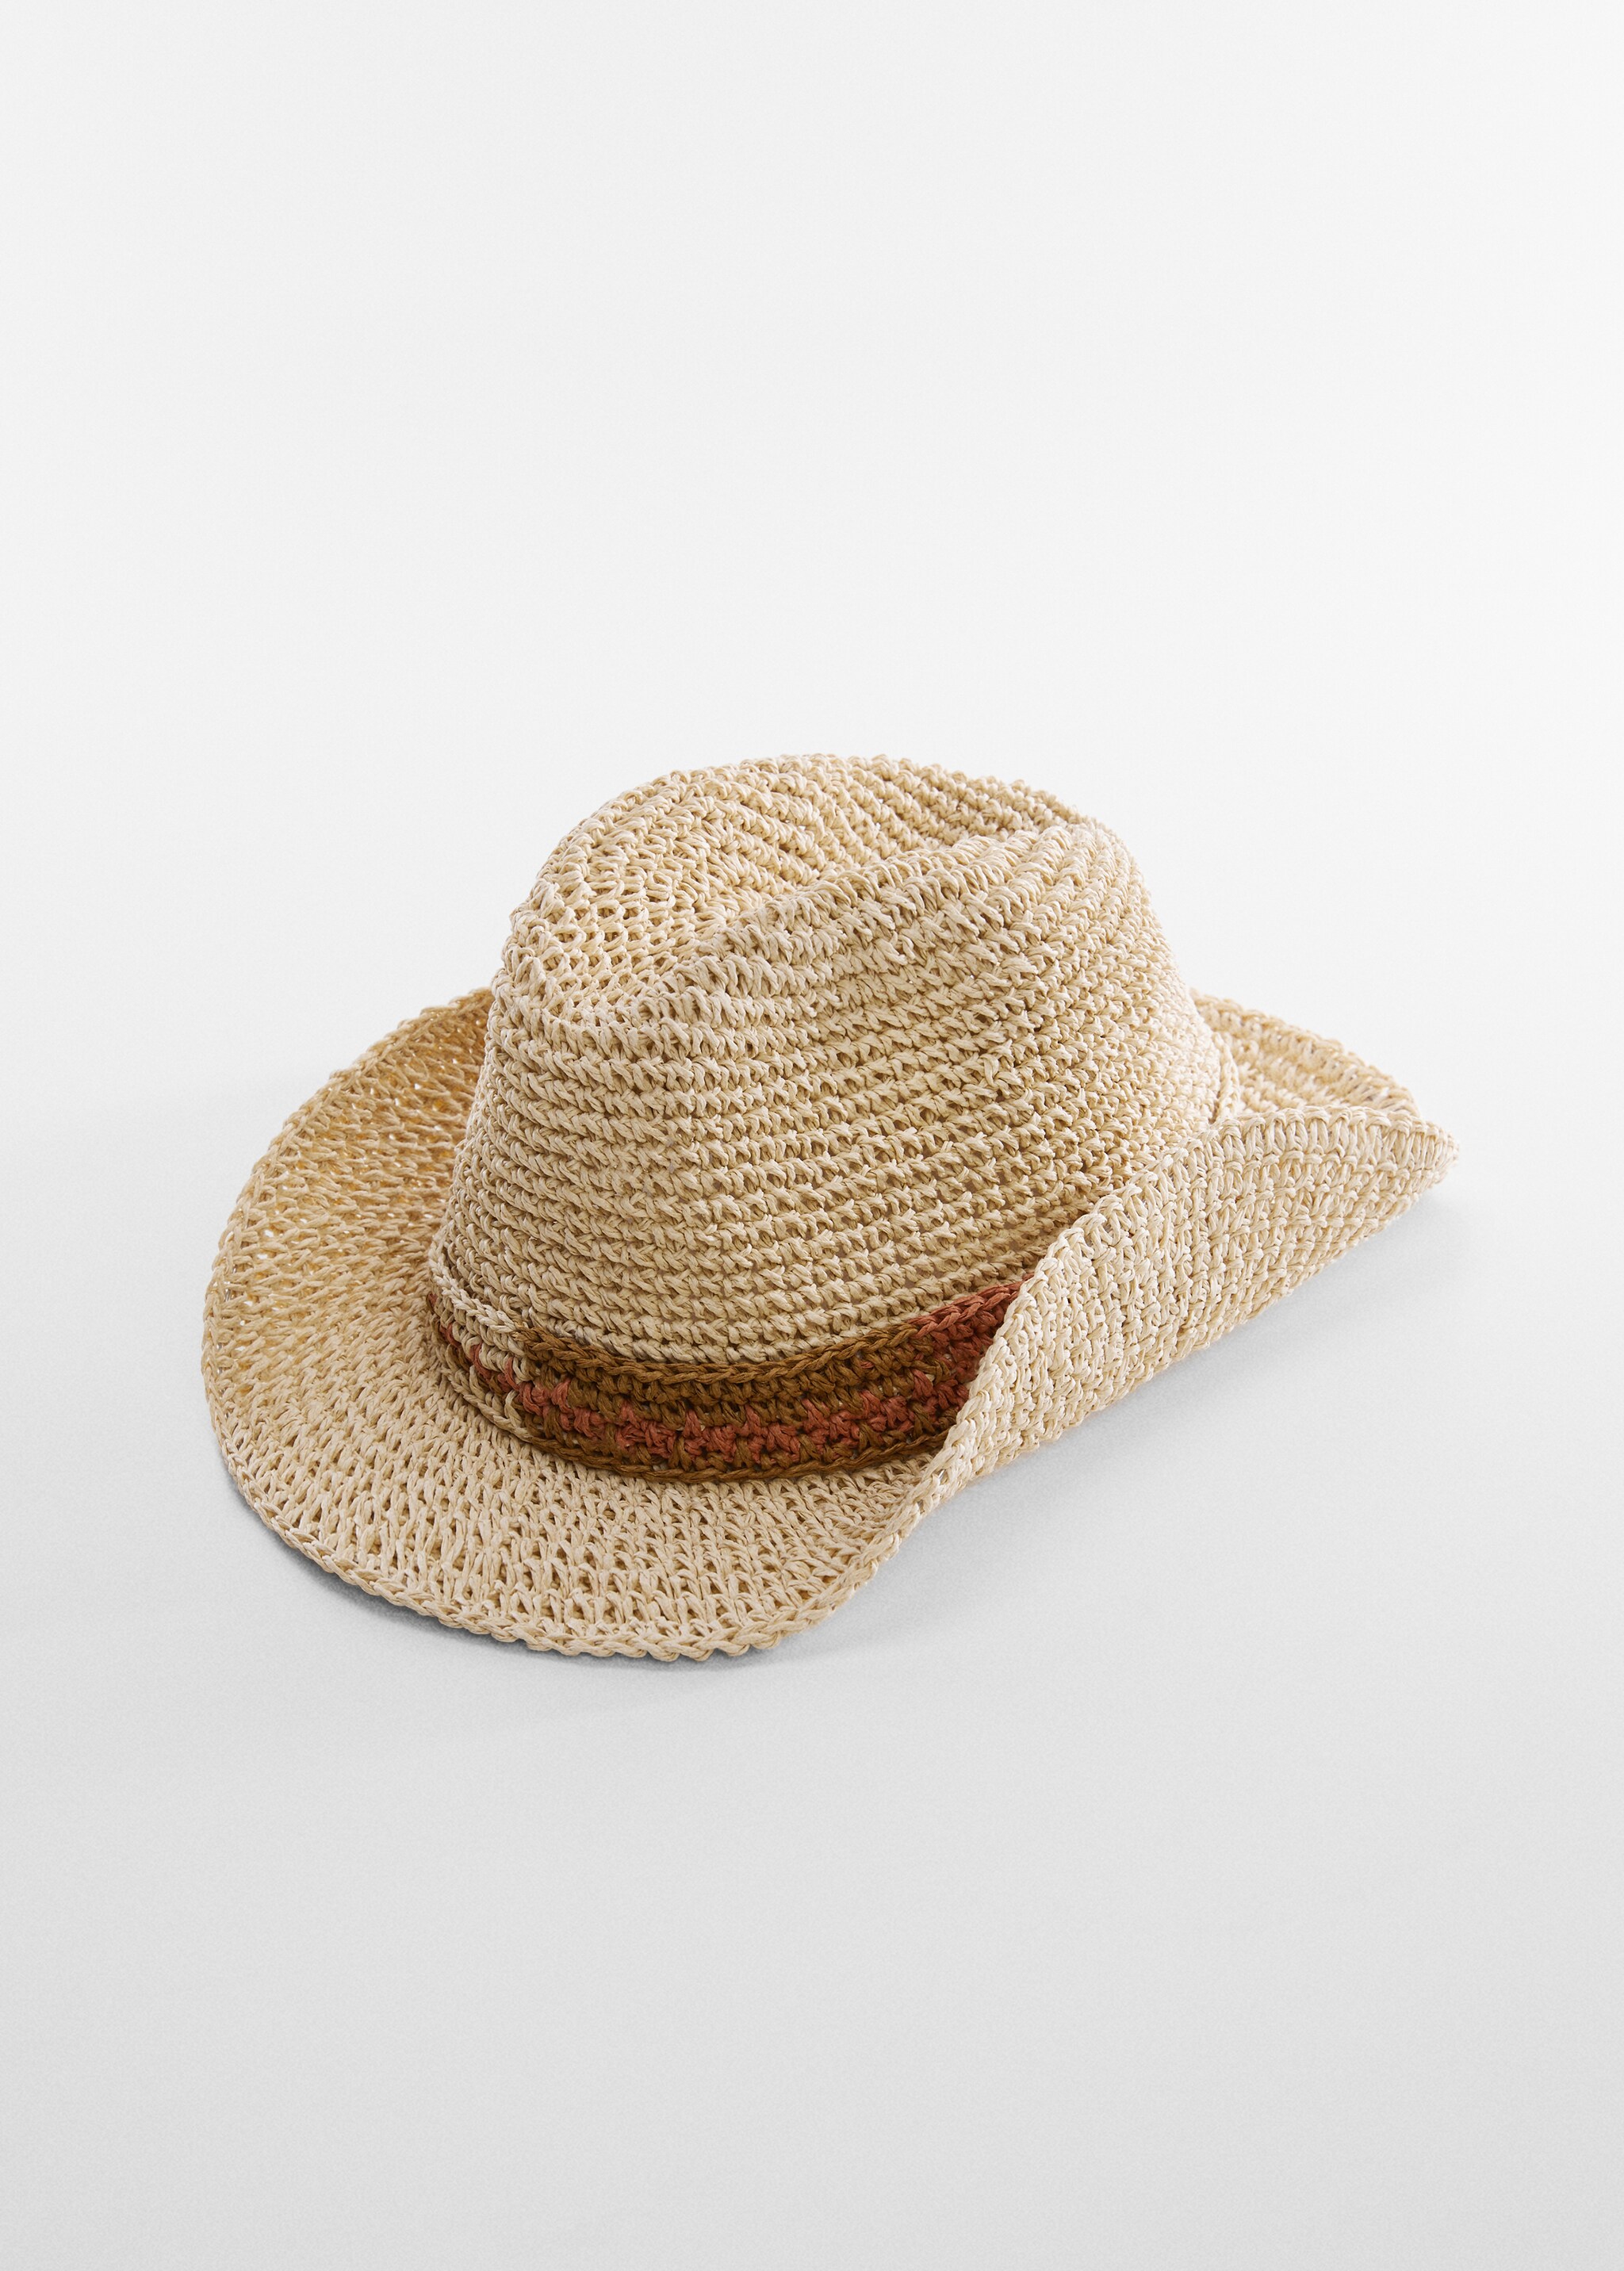 Natural fibre hat - Medium plane